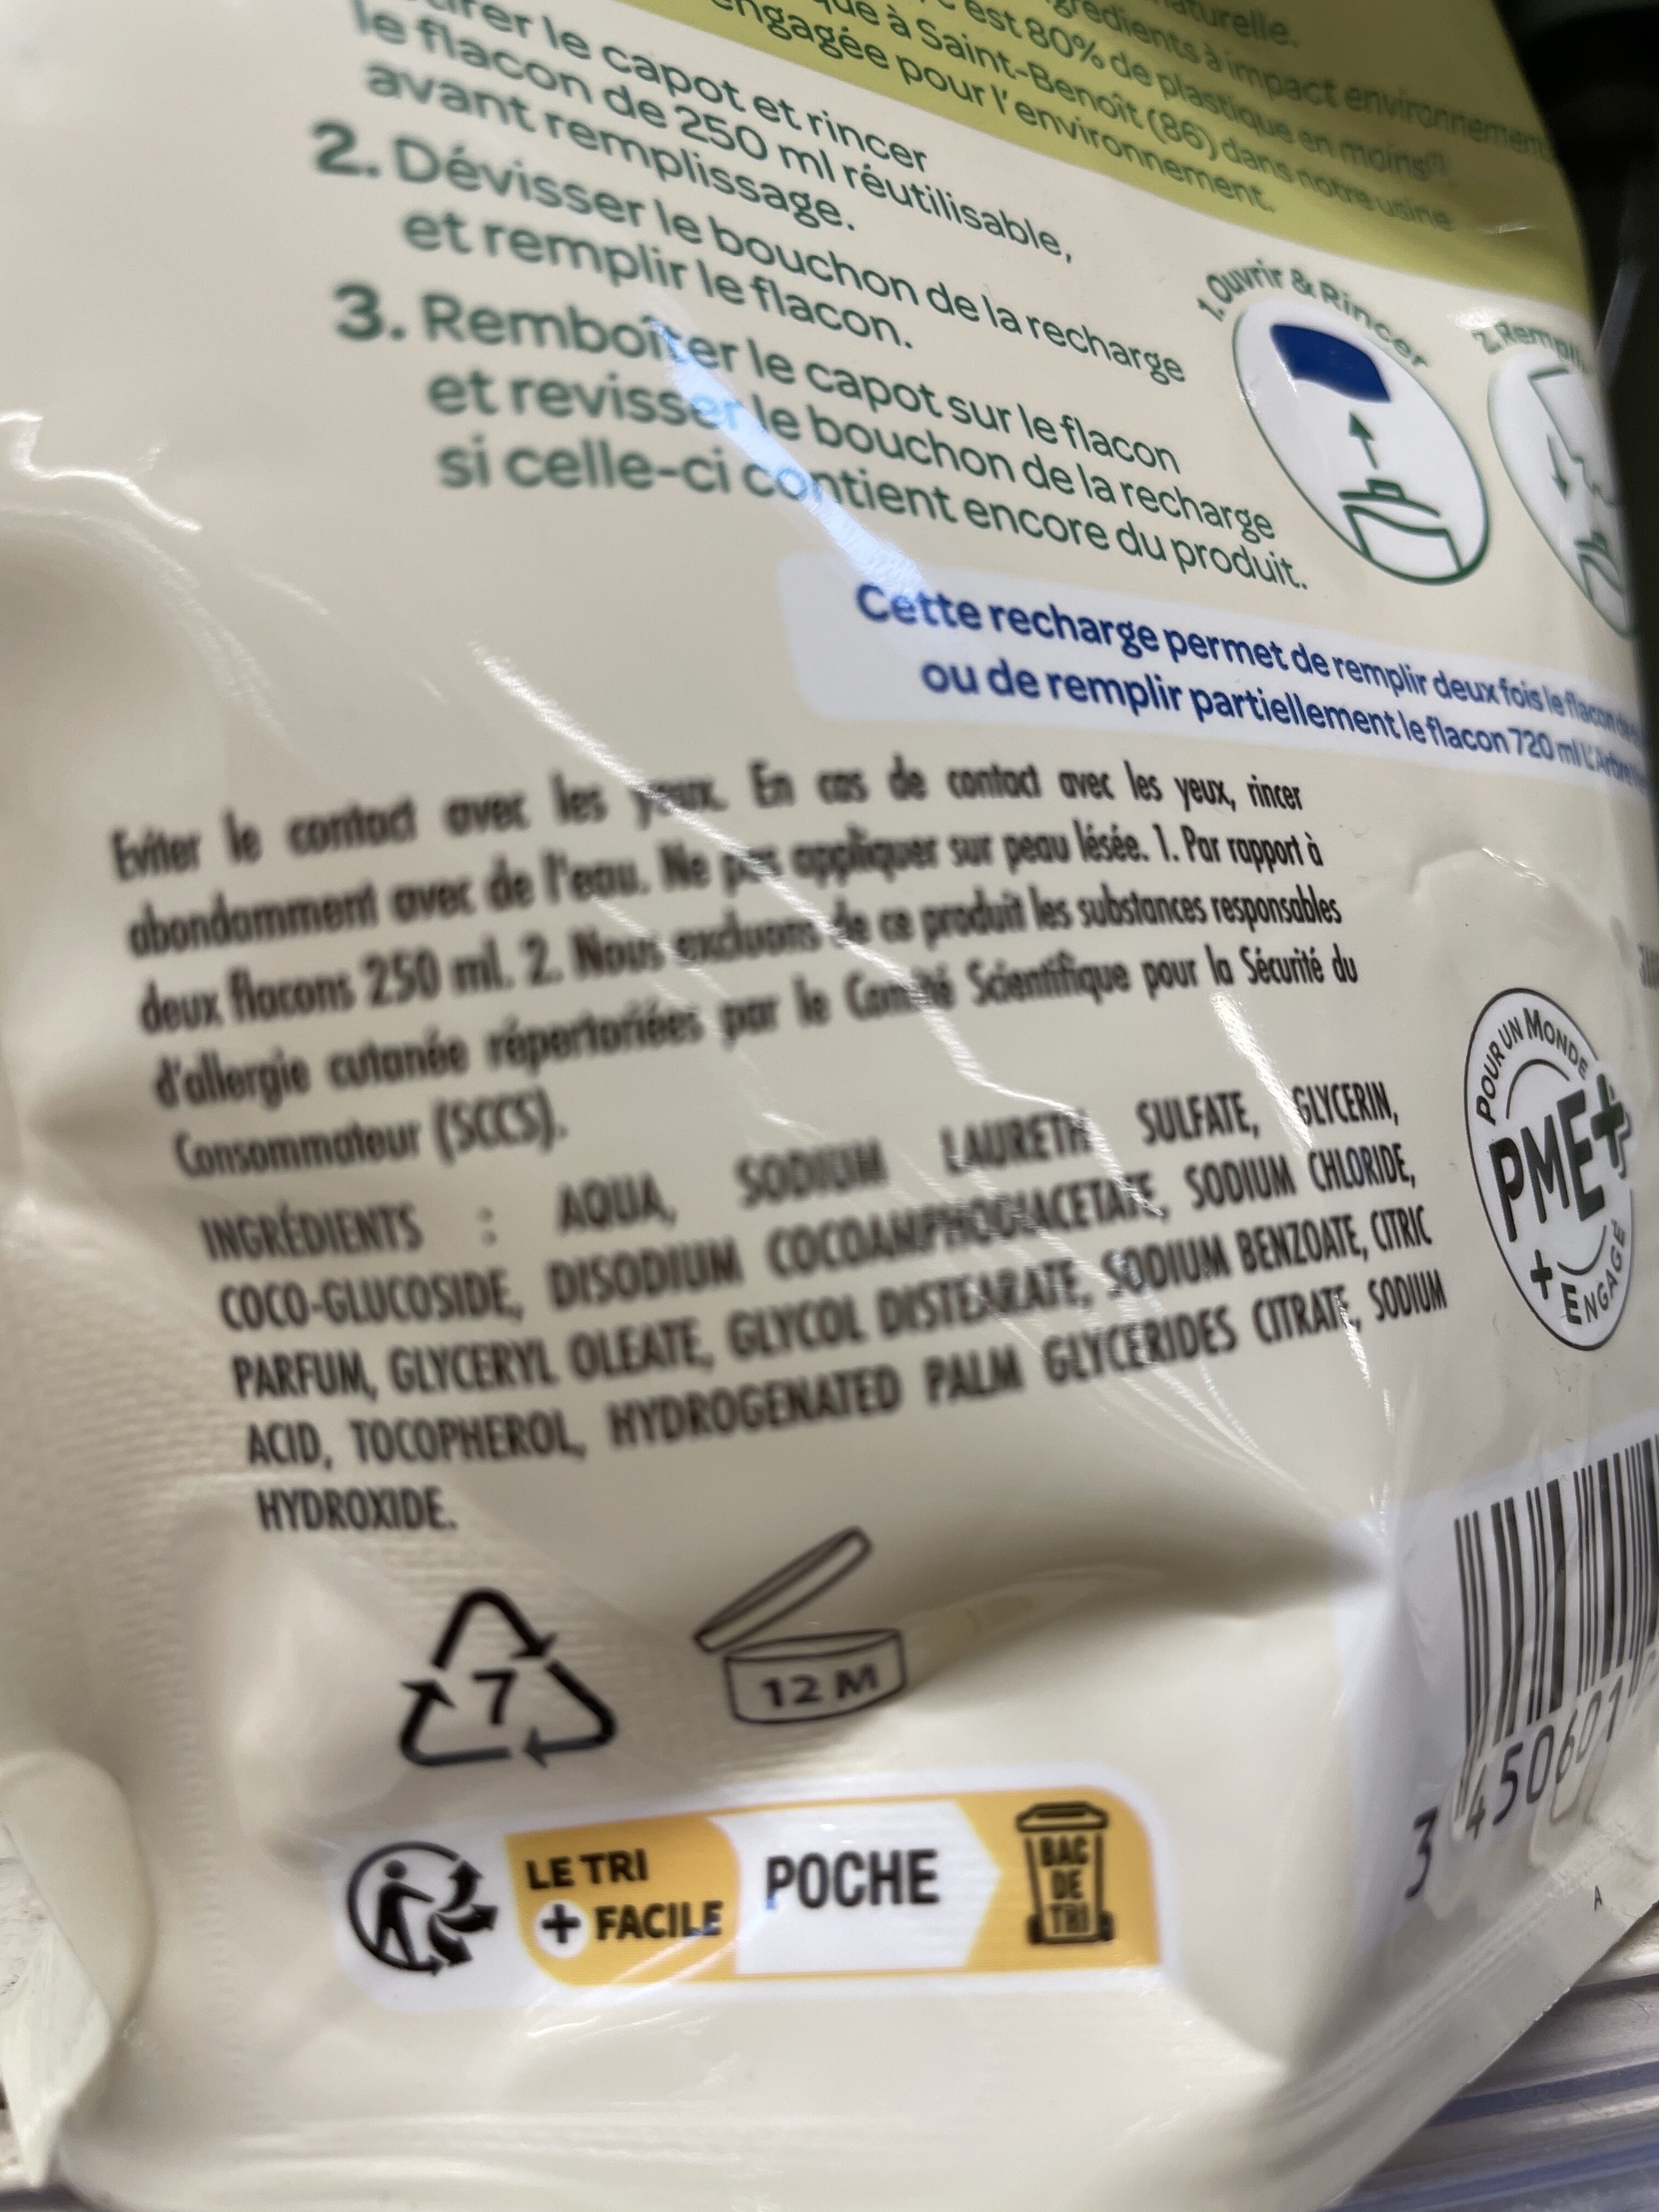 Crème douche Peaux sensible - Instruction de recyclage et/ou information d'emballage - fr